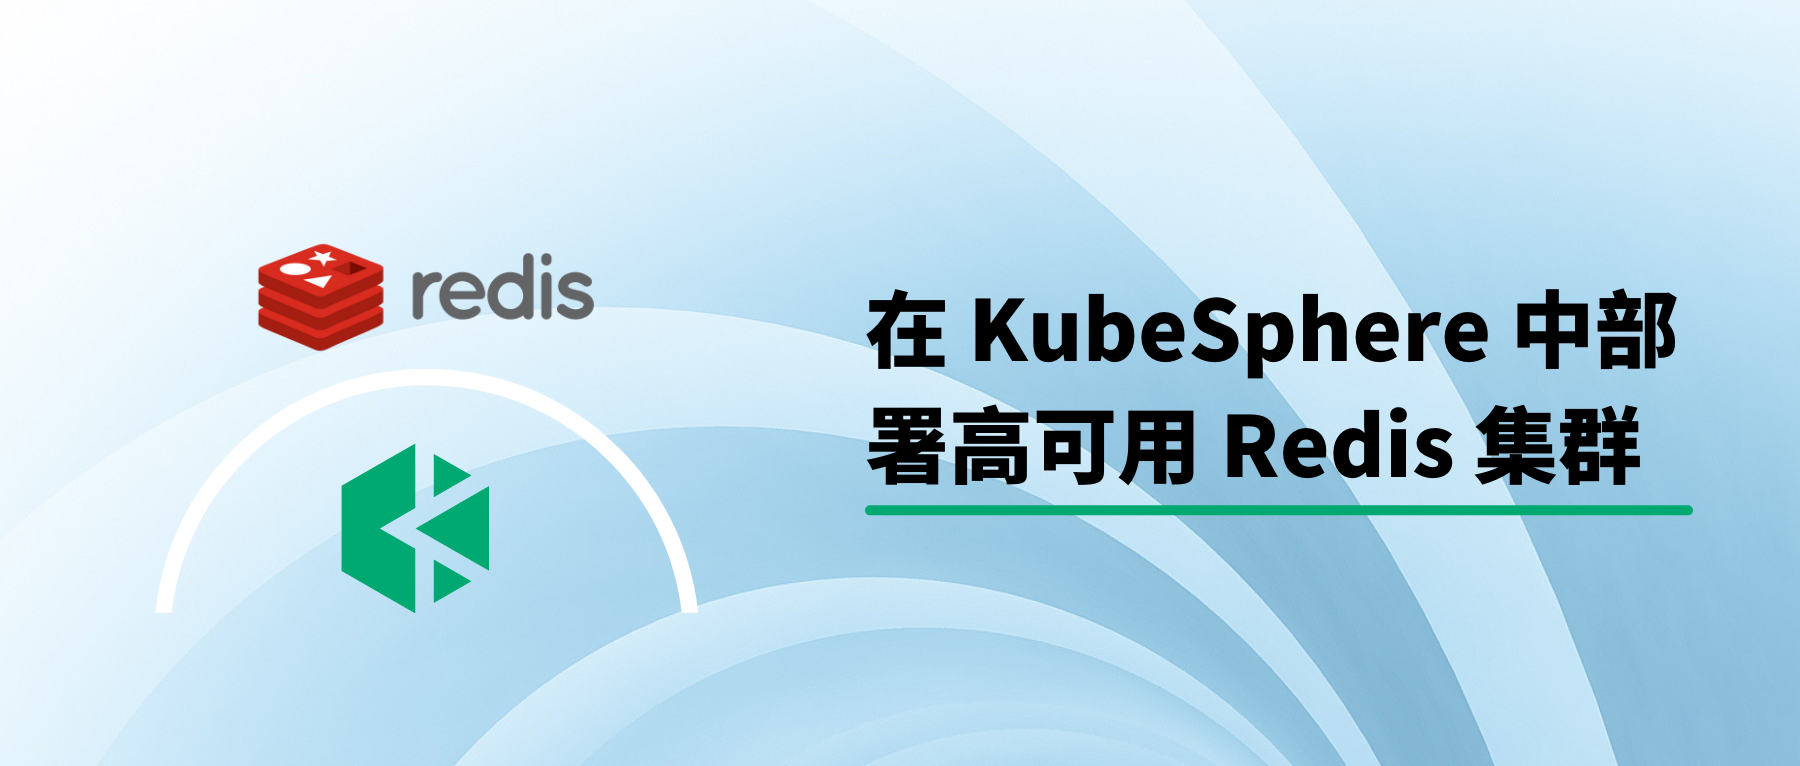 在 KubeSphere 中部署高可用 Redis 集群